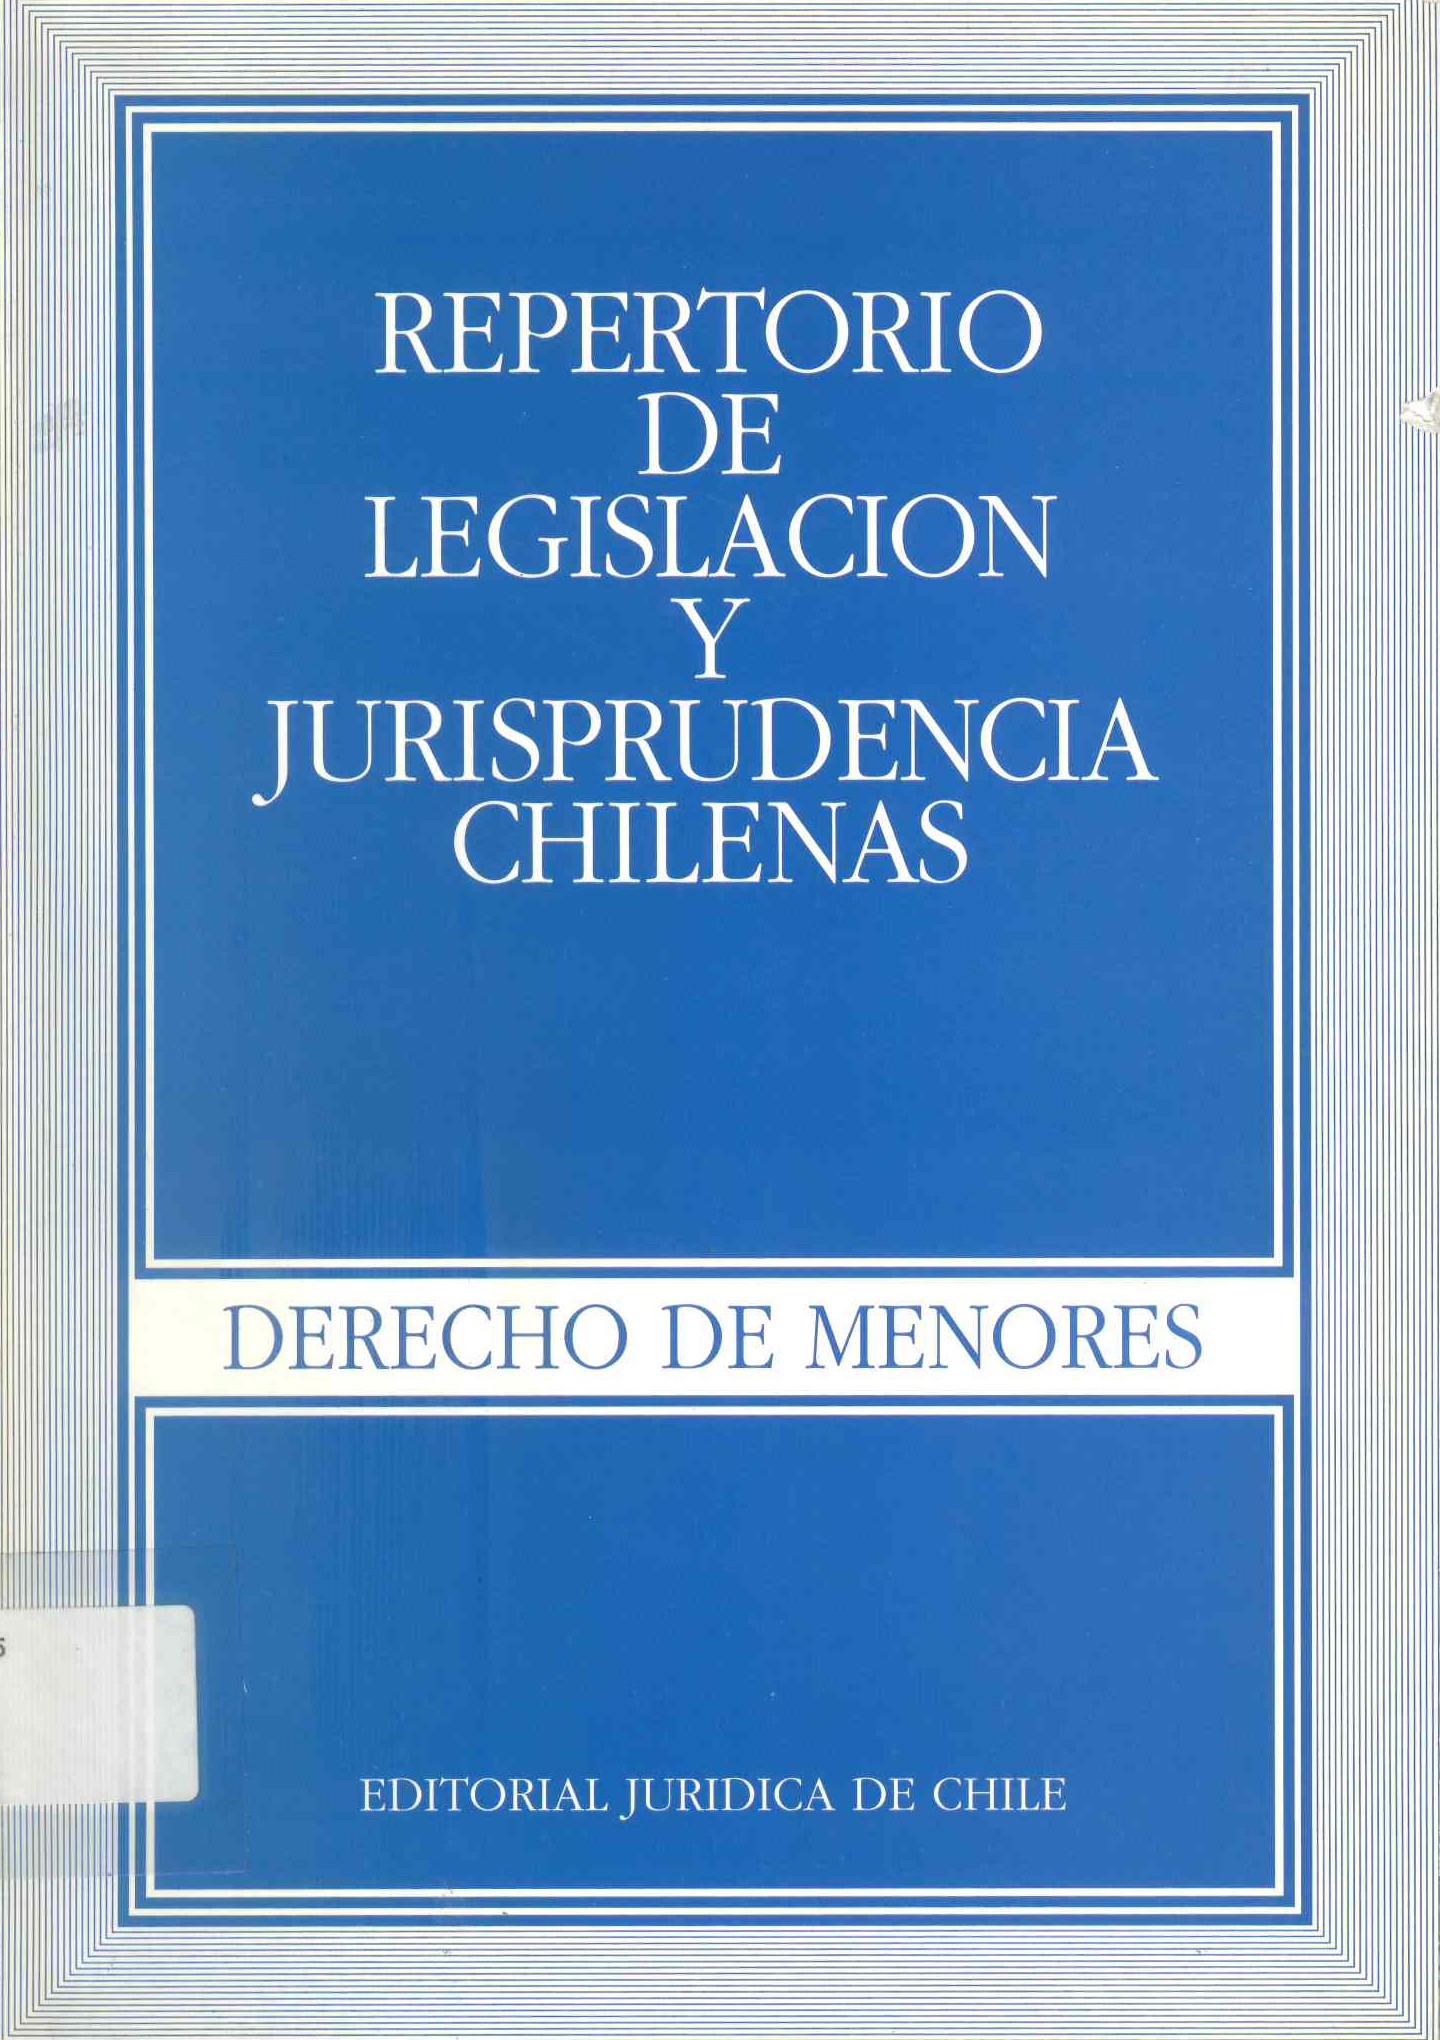 Repertorio de legislación y jurisprudencia chilenas. Derecho de menores